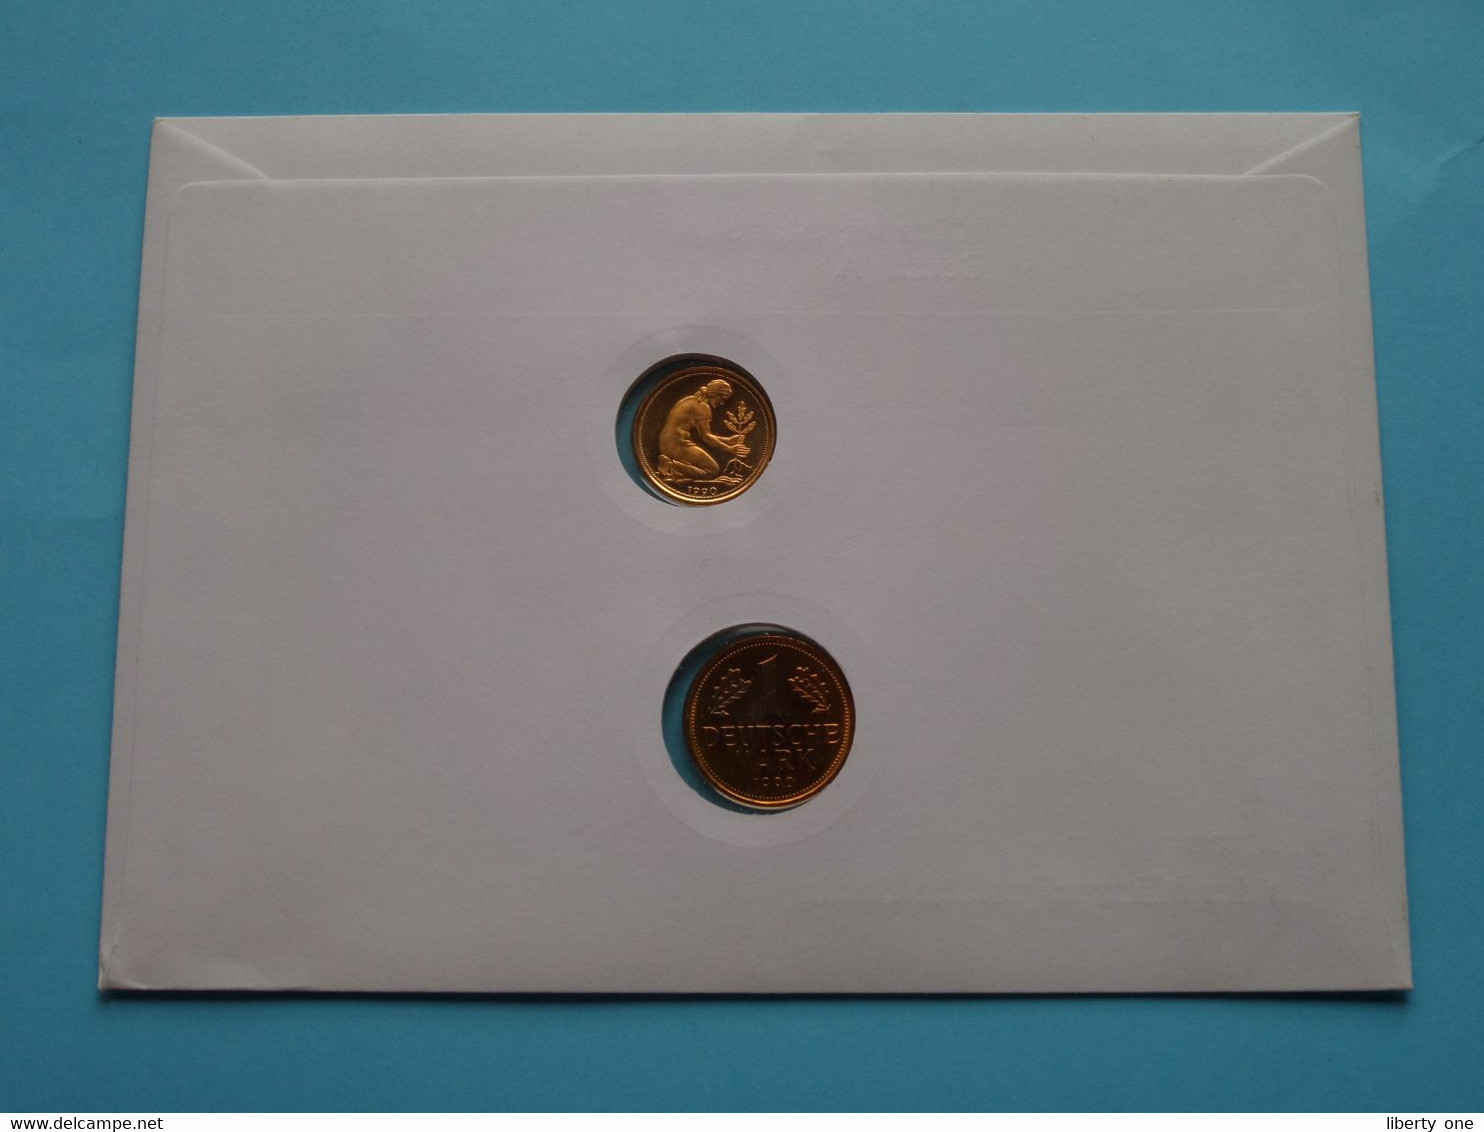 DM-Münzen Aus Der Münzprägestätte BERLIN (A) > ( Stamp > Berlin 1991 ) N° 01914 ! - Monedas Elongadas (elongated Coins)